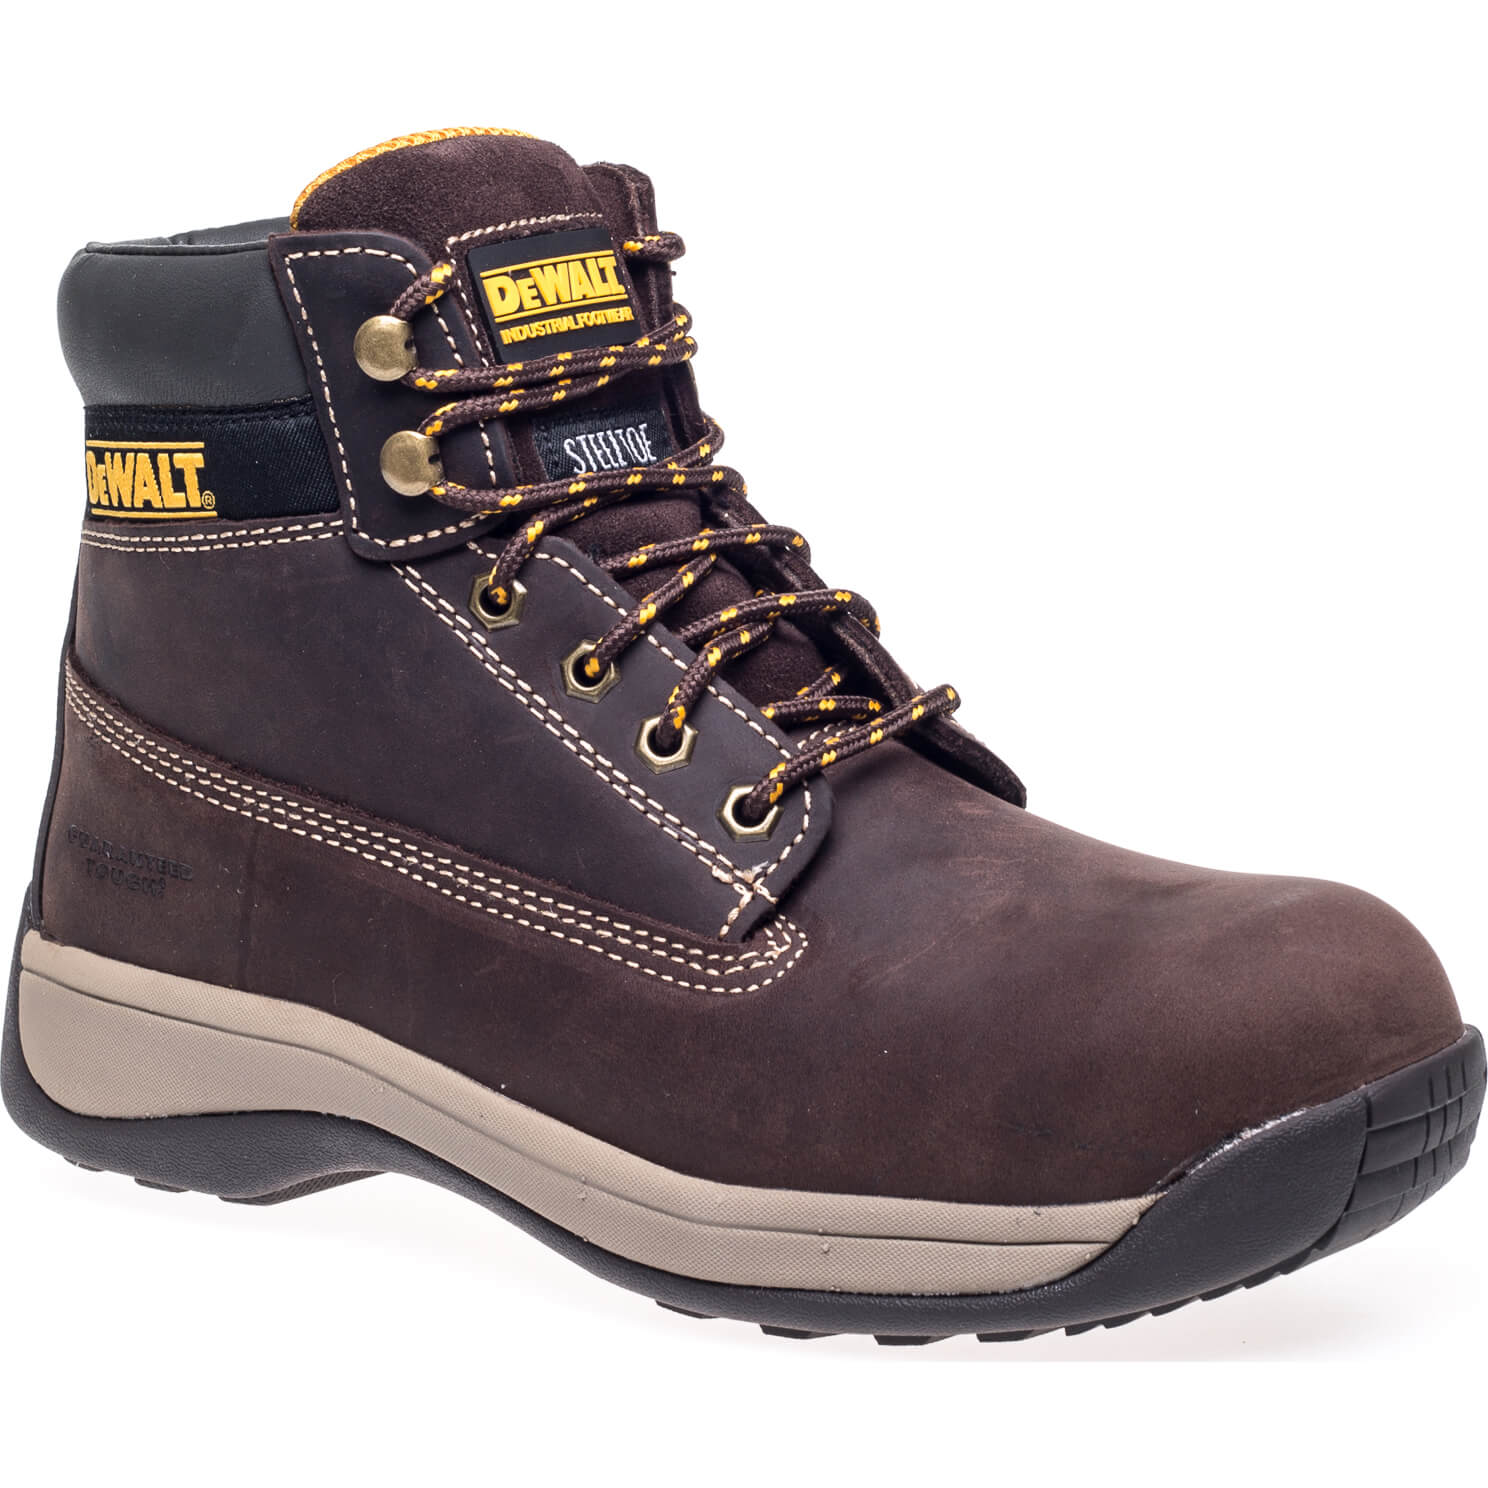 Image of DeWalt Apprentice Nubuck Safety Hiker Boots Brown Size 12